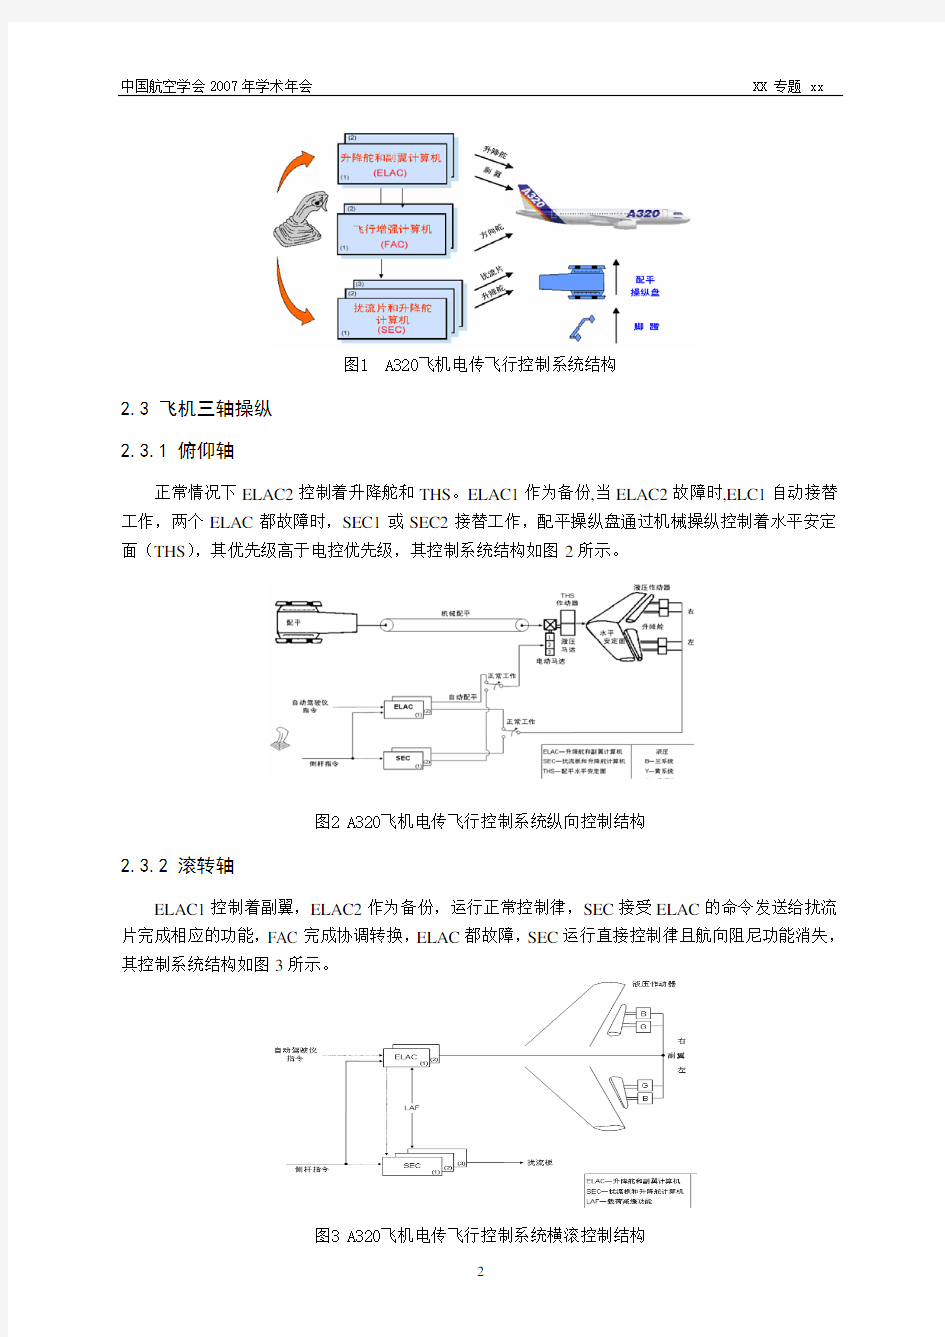 民机电传飞行控制系统体系结构研究